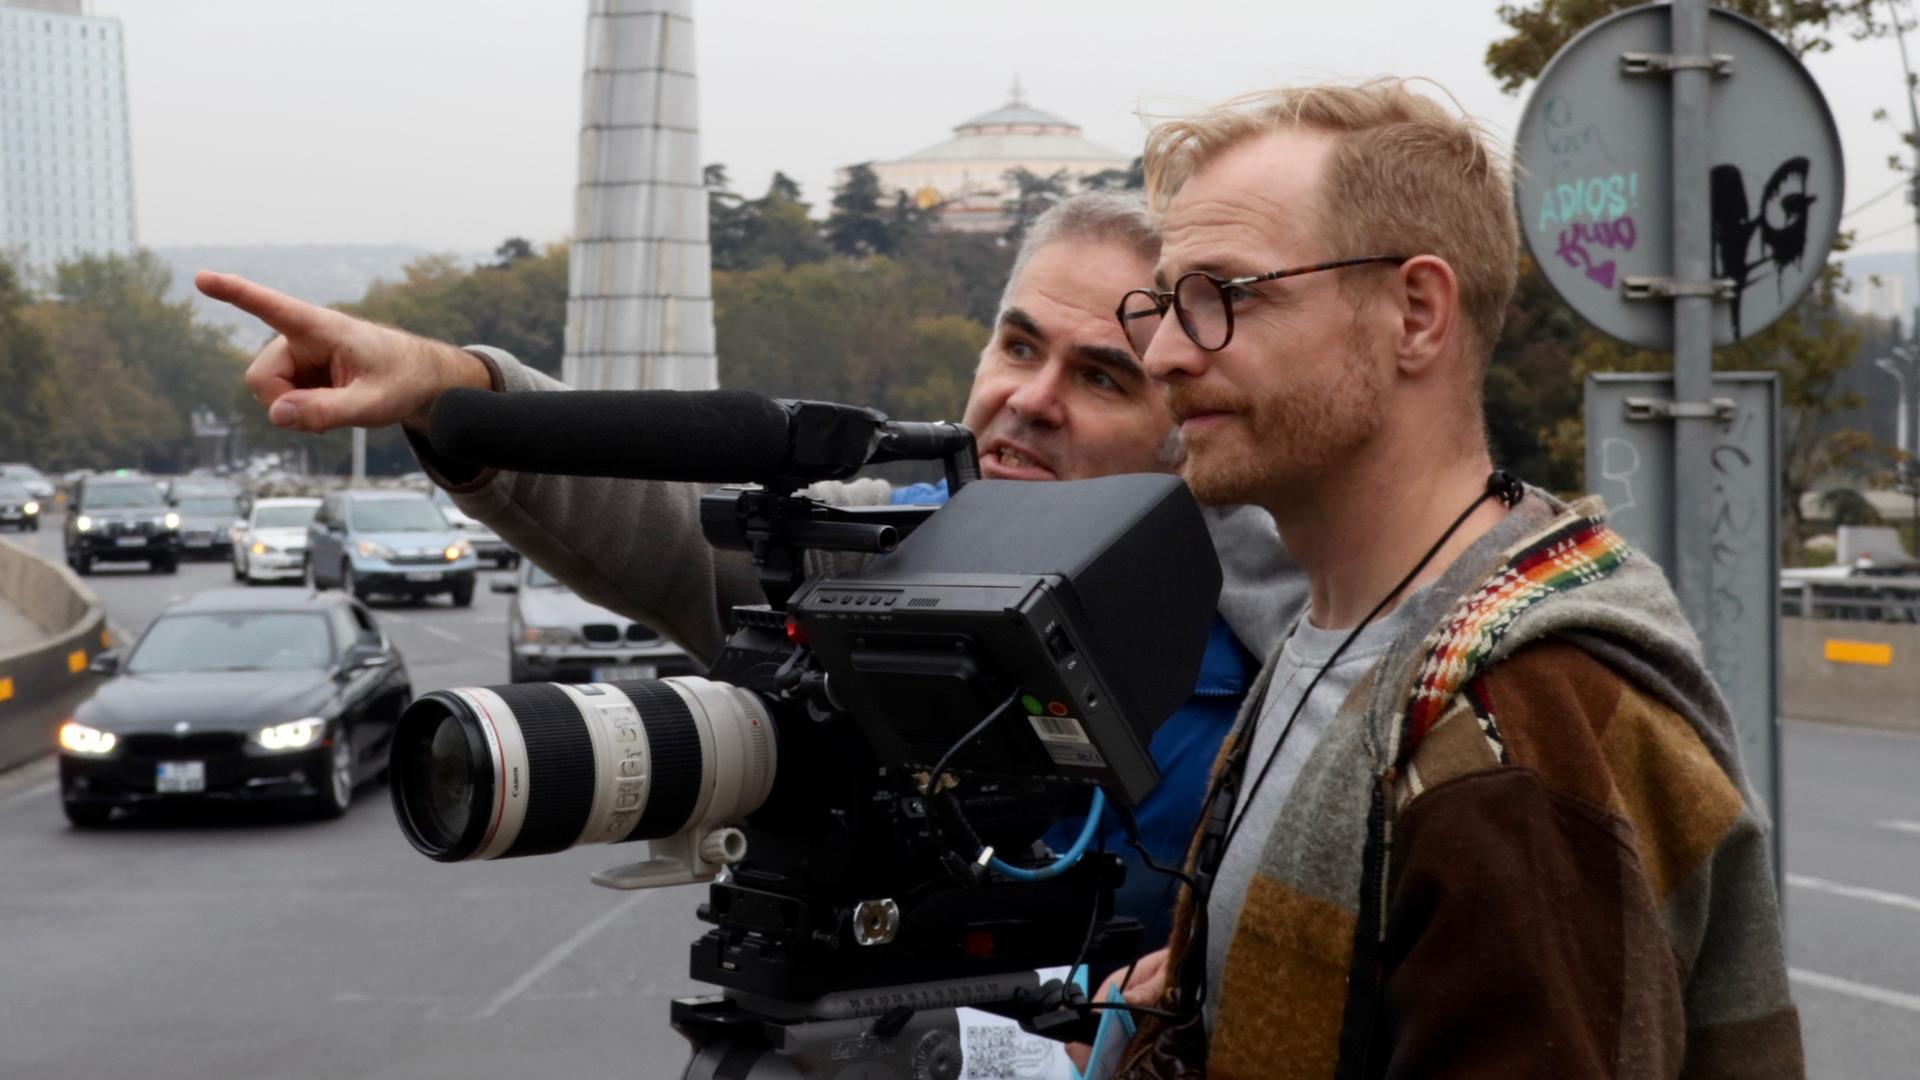 Zwei Männer stehen mit einer Kamera auf einer Straßenkreuzung und diskutieren.